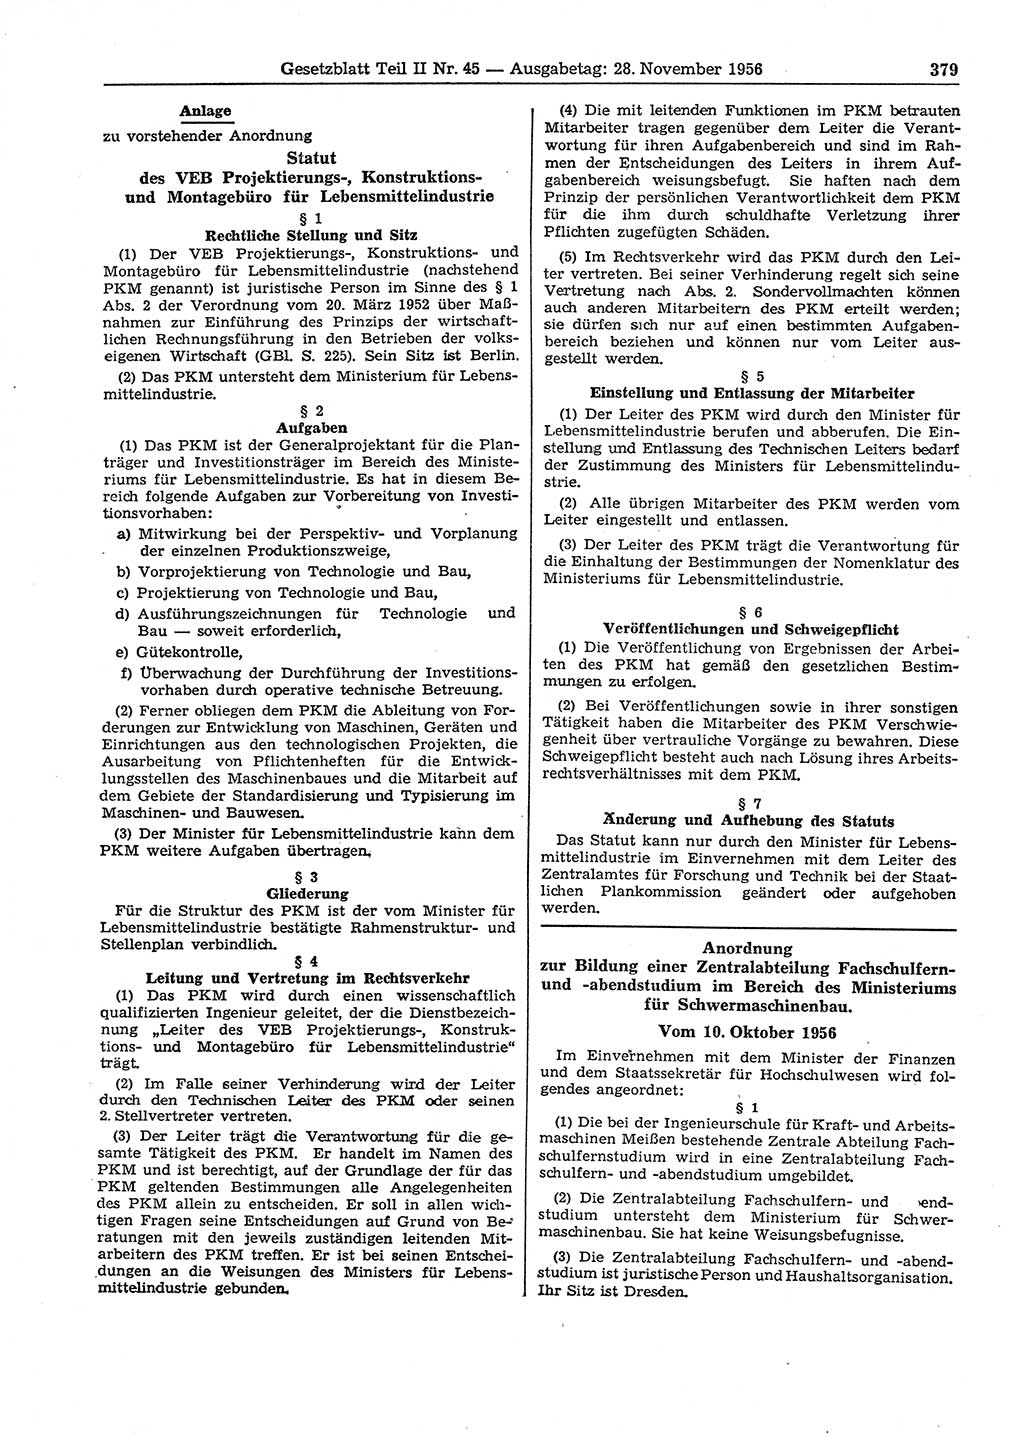 Gesetzblatt (GBl.) der Deutschen Demokratischen Republik (DDR) Teil ⅠⅠ 1956, Seite 379 (GBl. DDR ⅠⅠ 1956, S. 379)